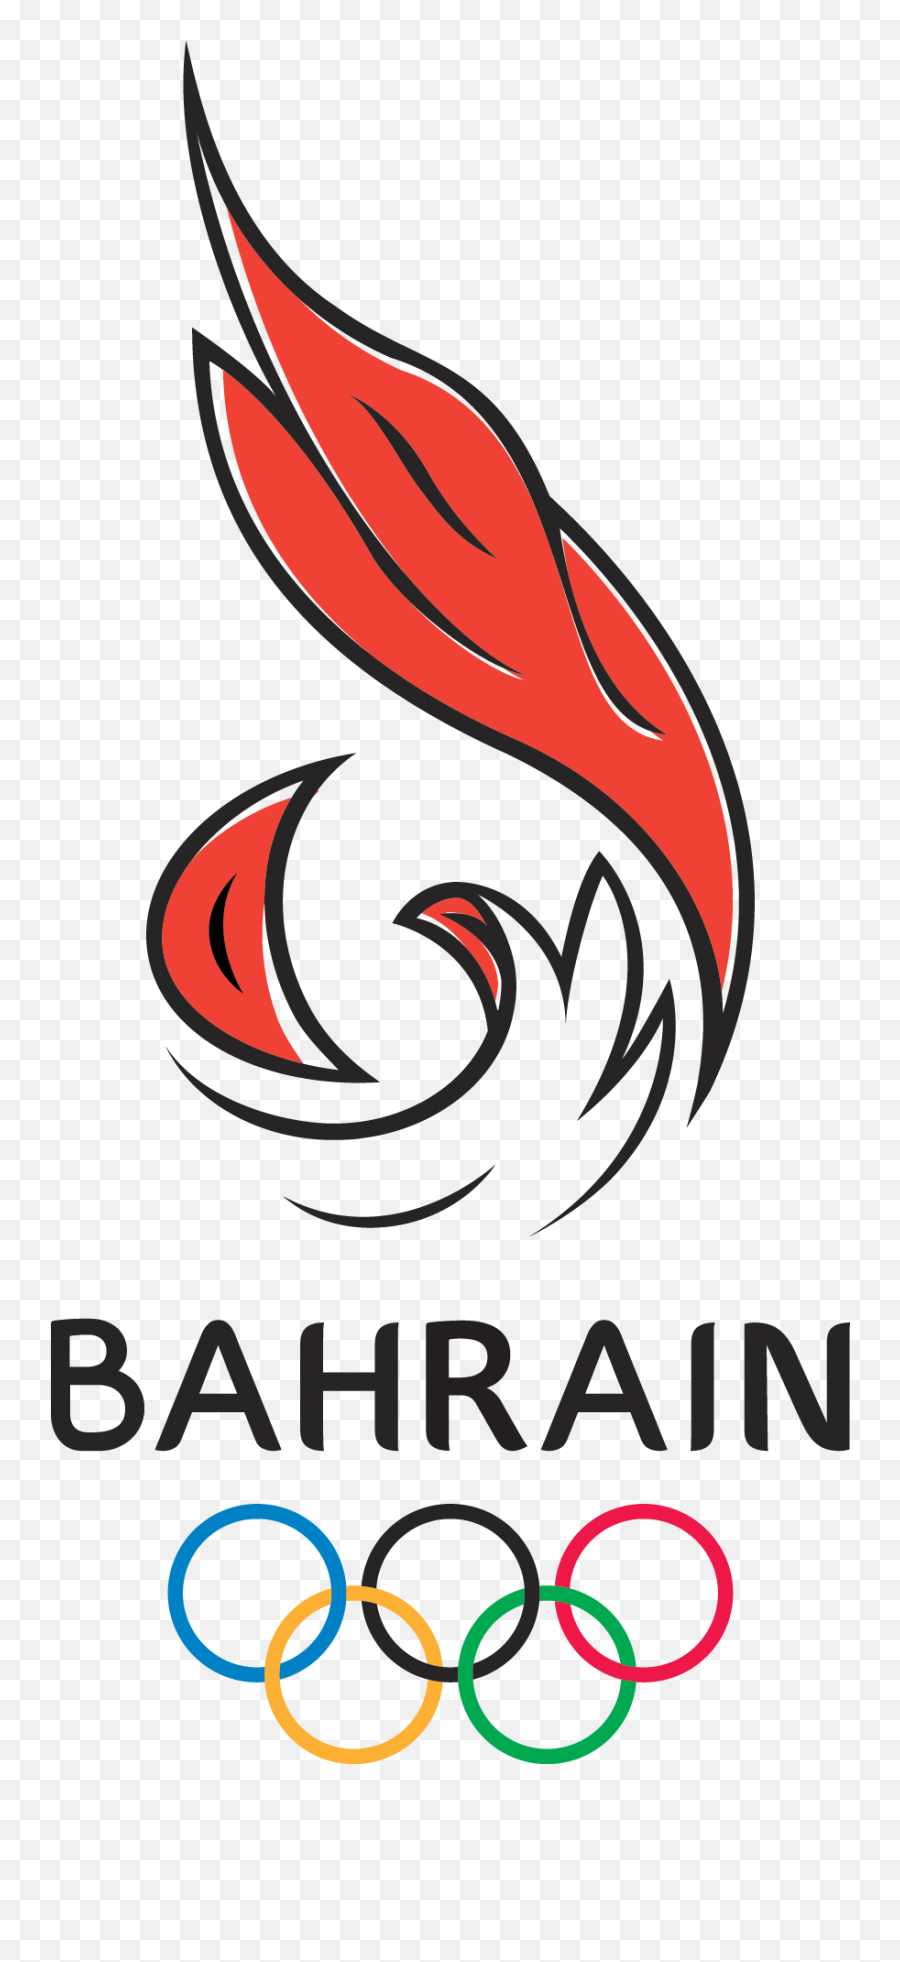 Bahrain Olympic Committee Olympic Committee Olympics Logos - Australia Olympics Summer Games Emoji,Olympics Logo